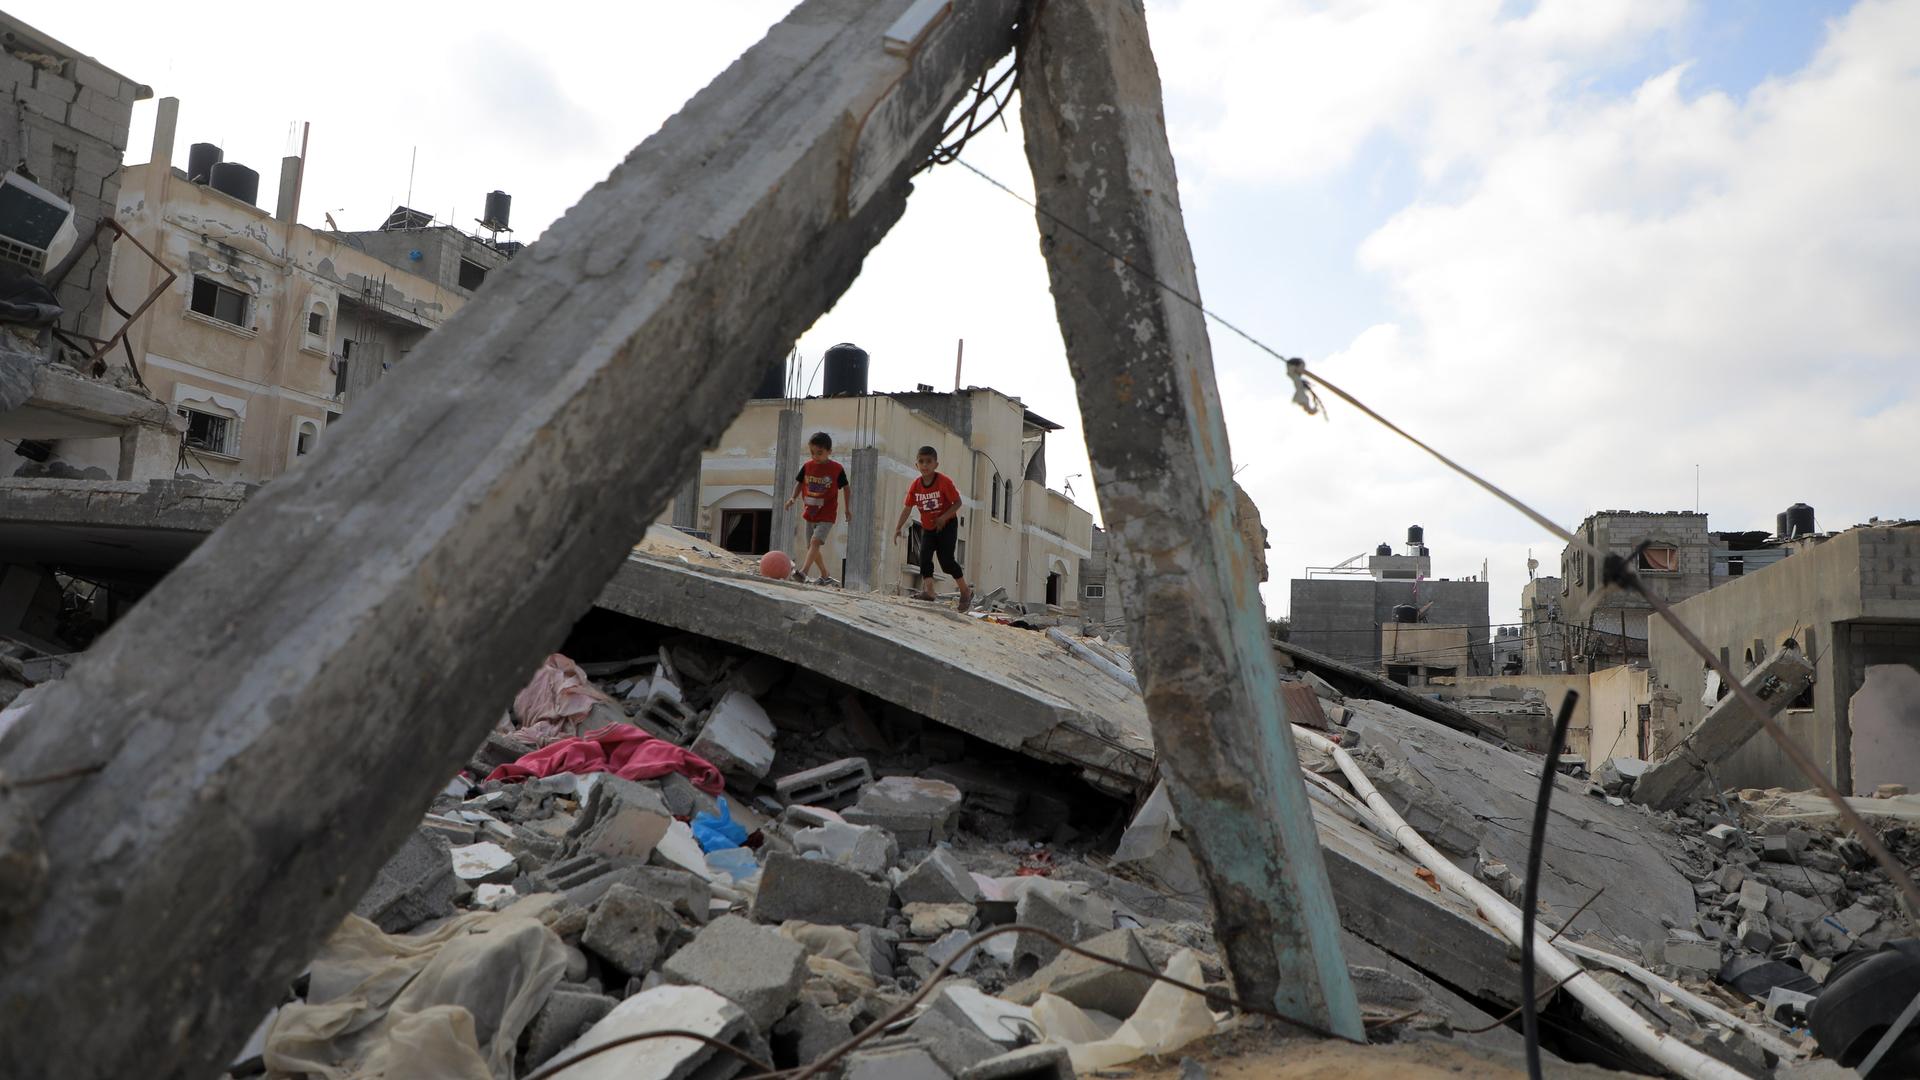 Kinder spielen auf den Trümmern von Haus. Das Bild ist aus der Stadt Rafah im Gaza-Streifen.